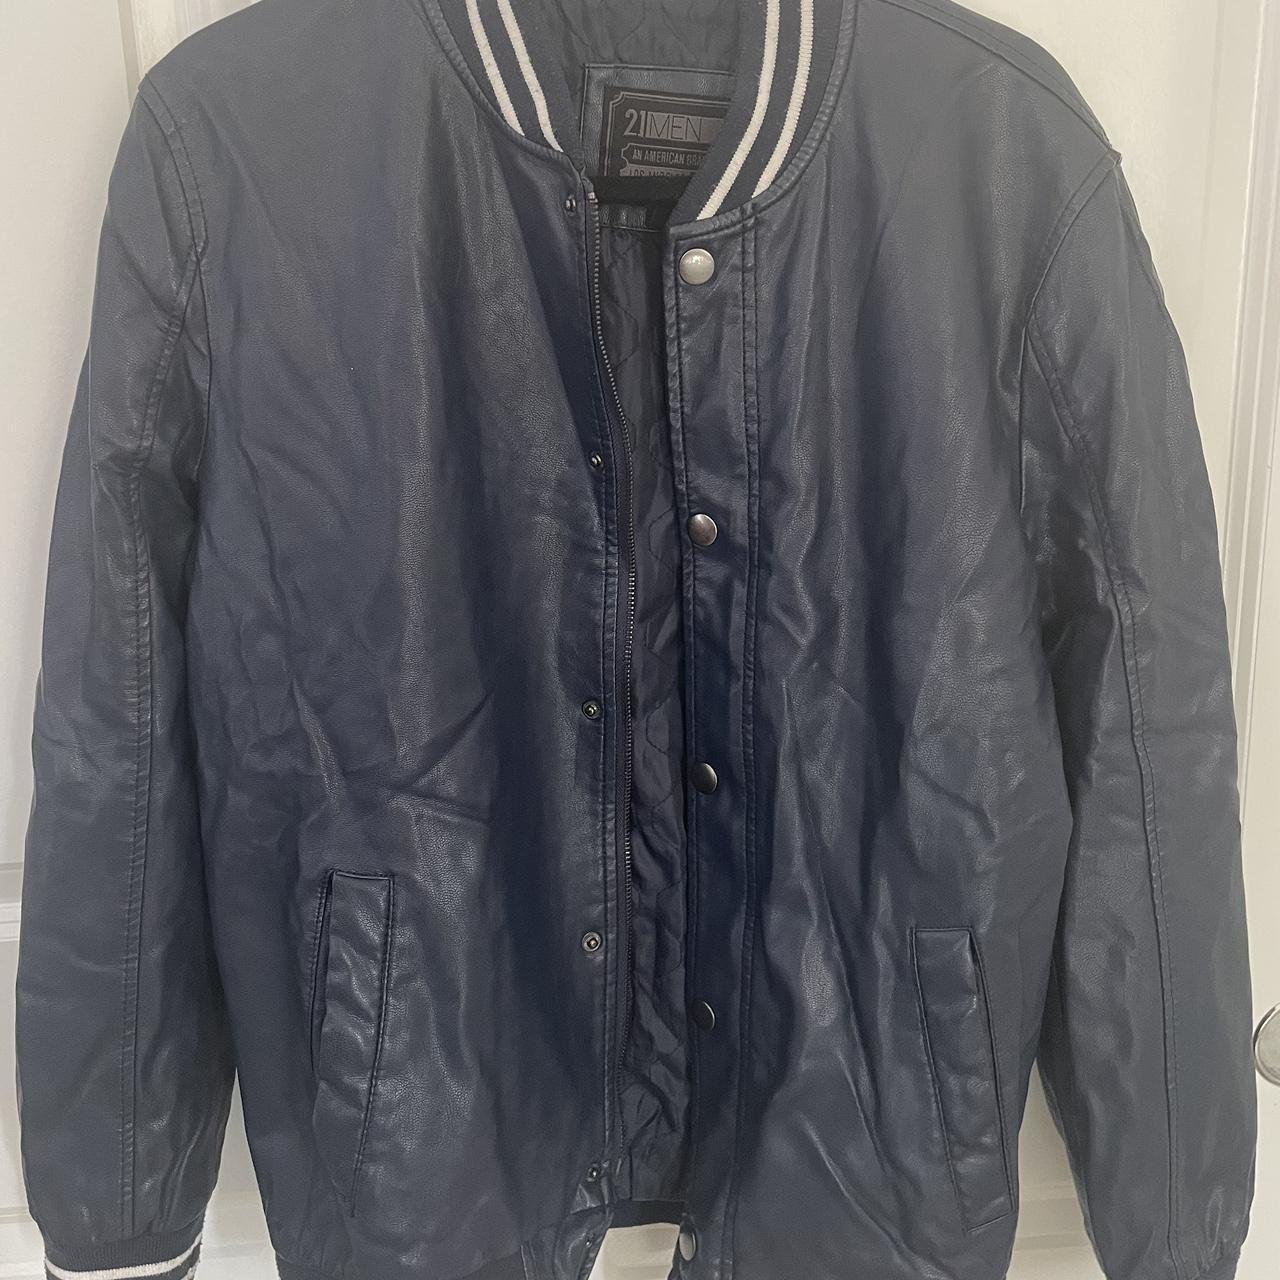 21 Men blue leather jacket - Depop